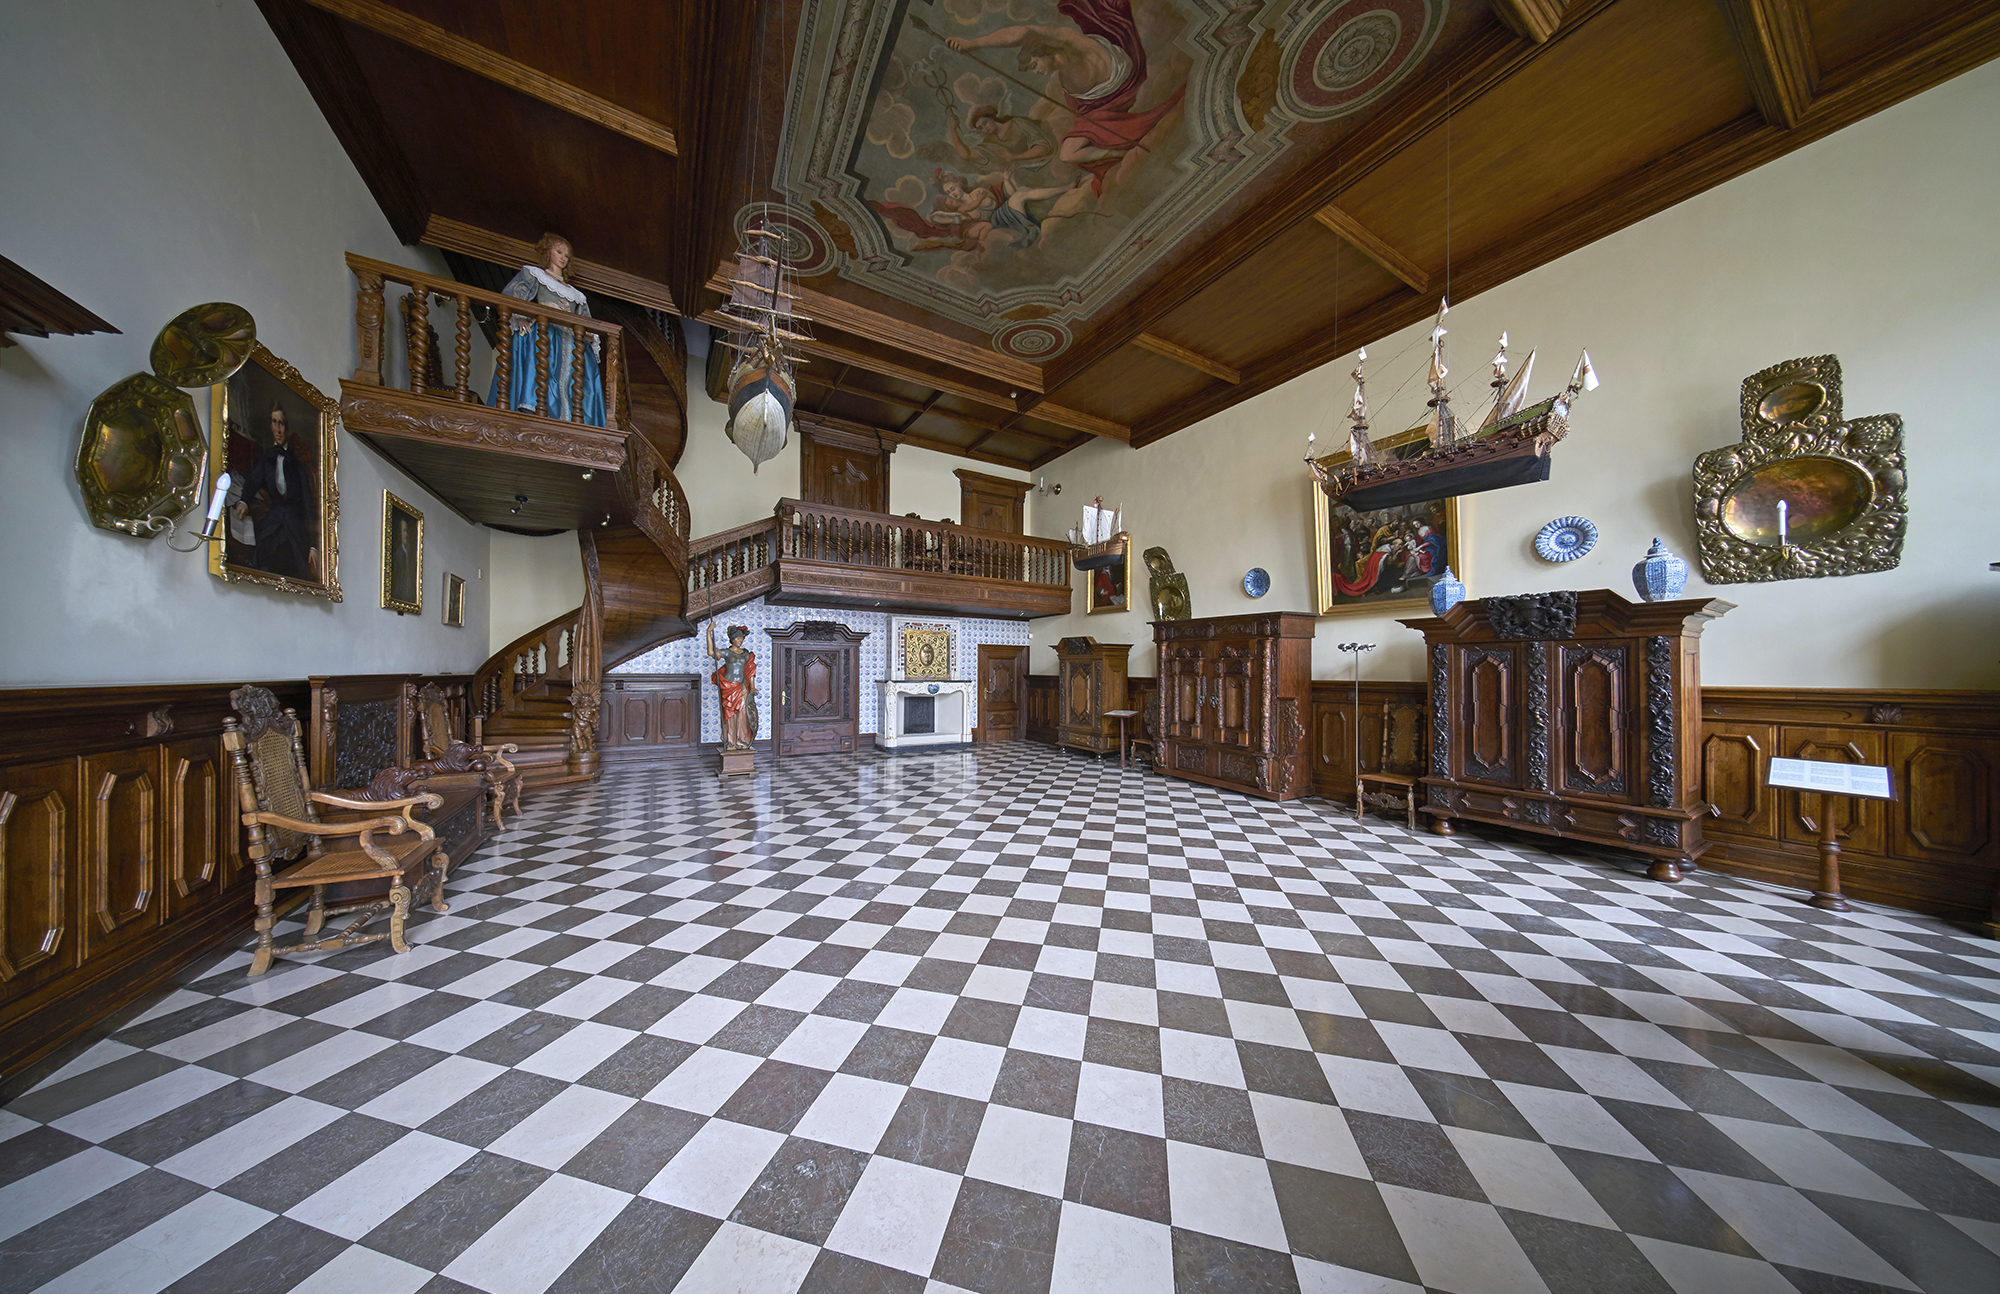 Wnętrze Sieni Gdańskiej w Nowym Domu Ławy. Ściany do połowy wyłożone boazerią, pod nimi stoją meble gdańskie, szafy i krzesła. W głębi drewniana klatka schodowa.